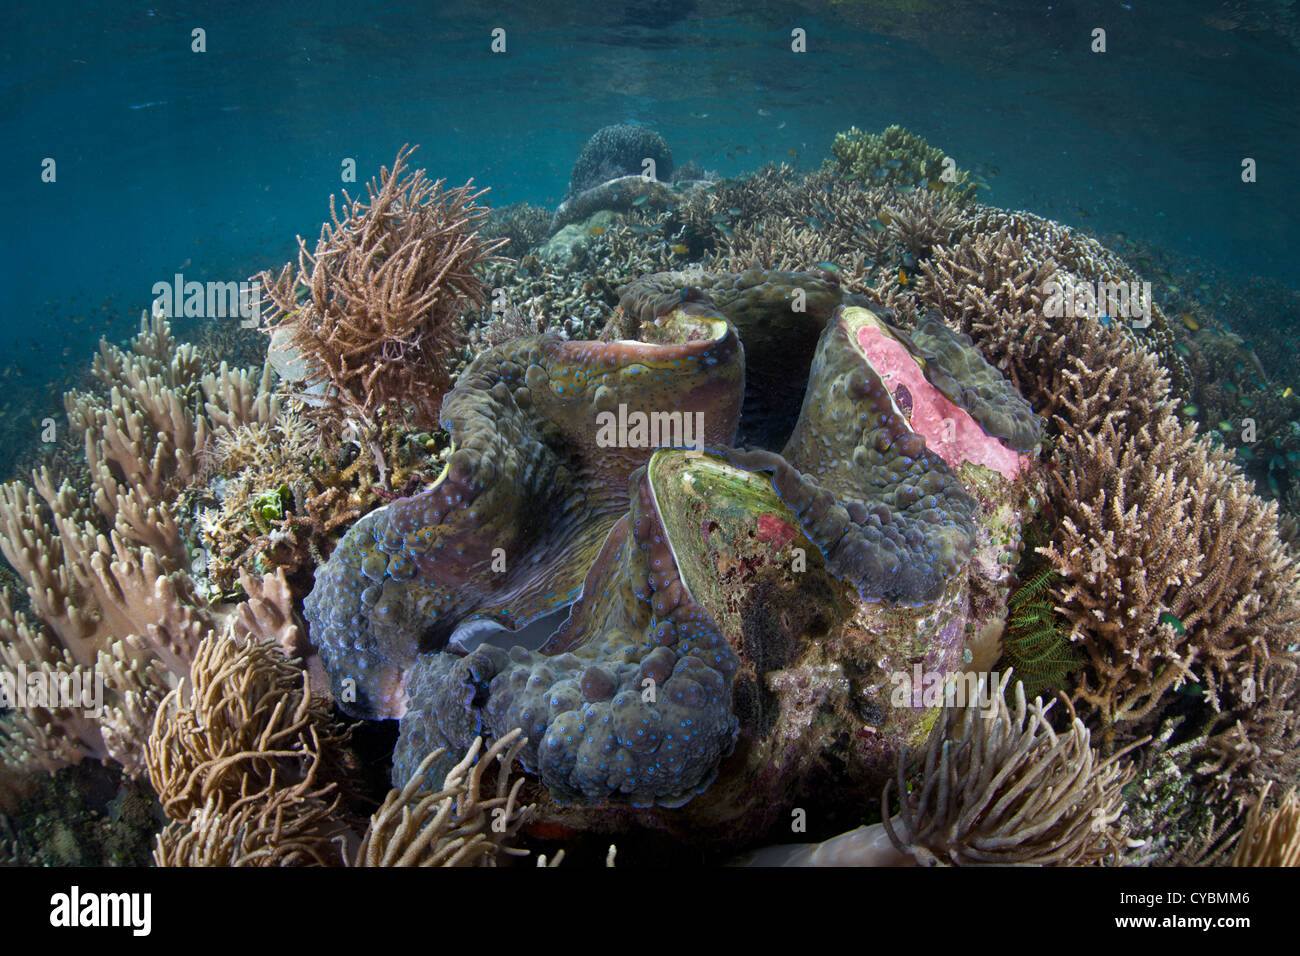 Eine massive Riesenmuschel Tridacna Gigas, wächst in sehr flachem Wasser an einem gesunden Korallenriff. Dies ist eine vom Aussterben bedrohte Arten. Stockfoto